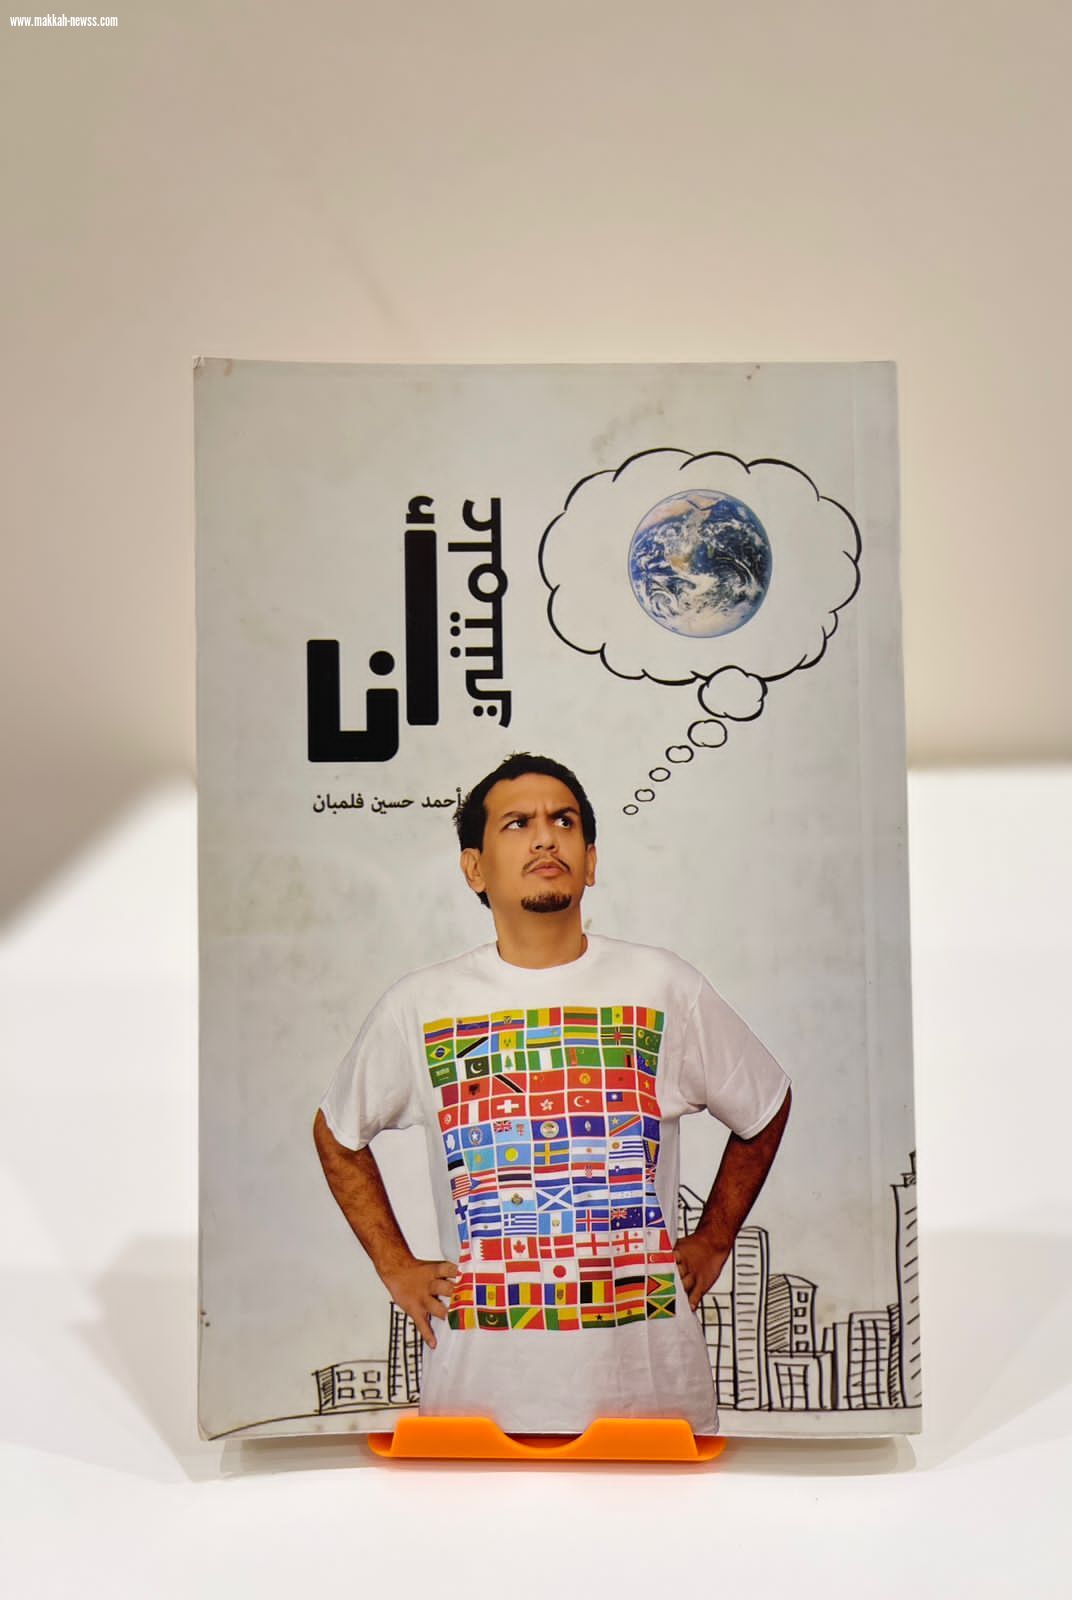 صحيفة صوت مكة الاجتماعية تحاور الكاتب أحمد فلمبان - القراءة هي الموسوعة المغذية التي سوف تغذي الخيال الخصب لدى الكاتب .